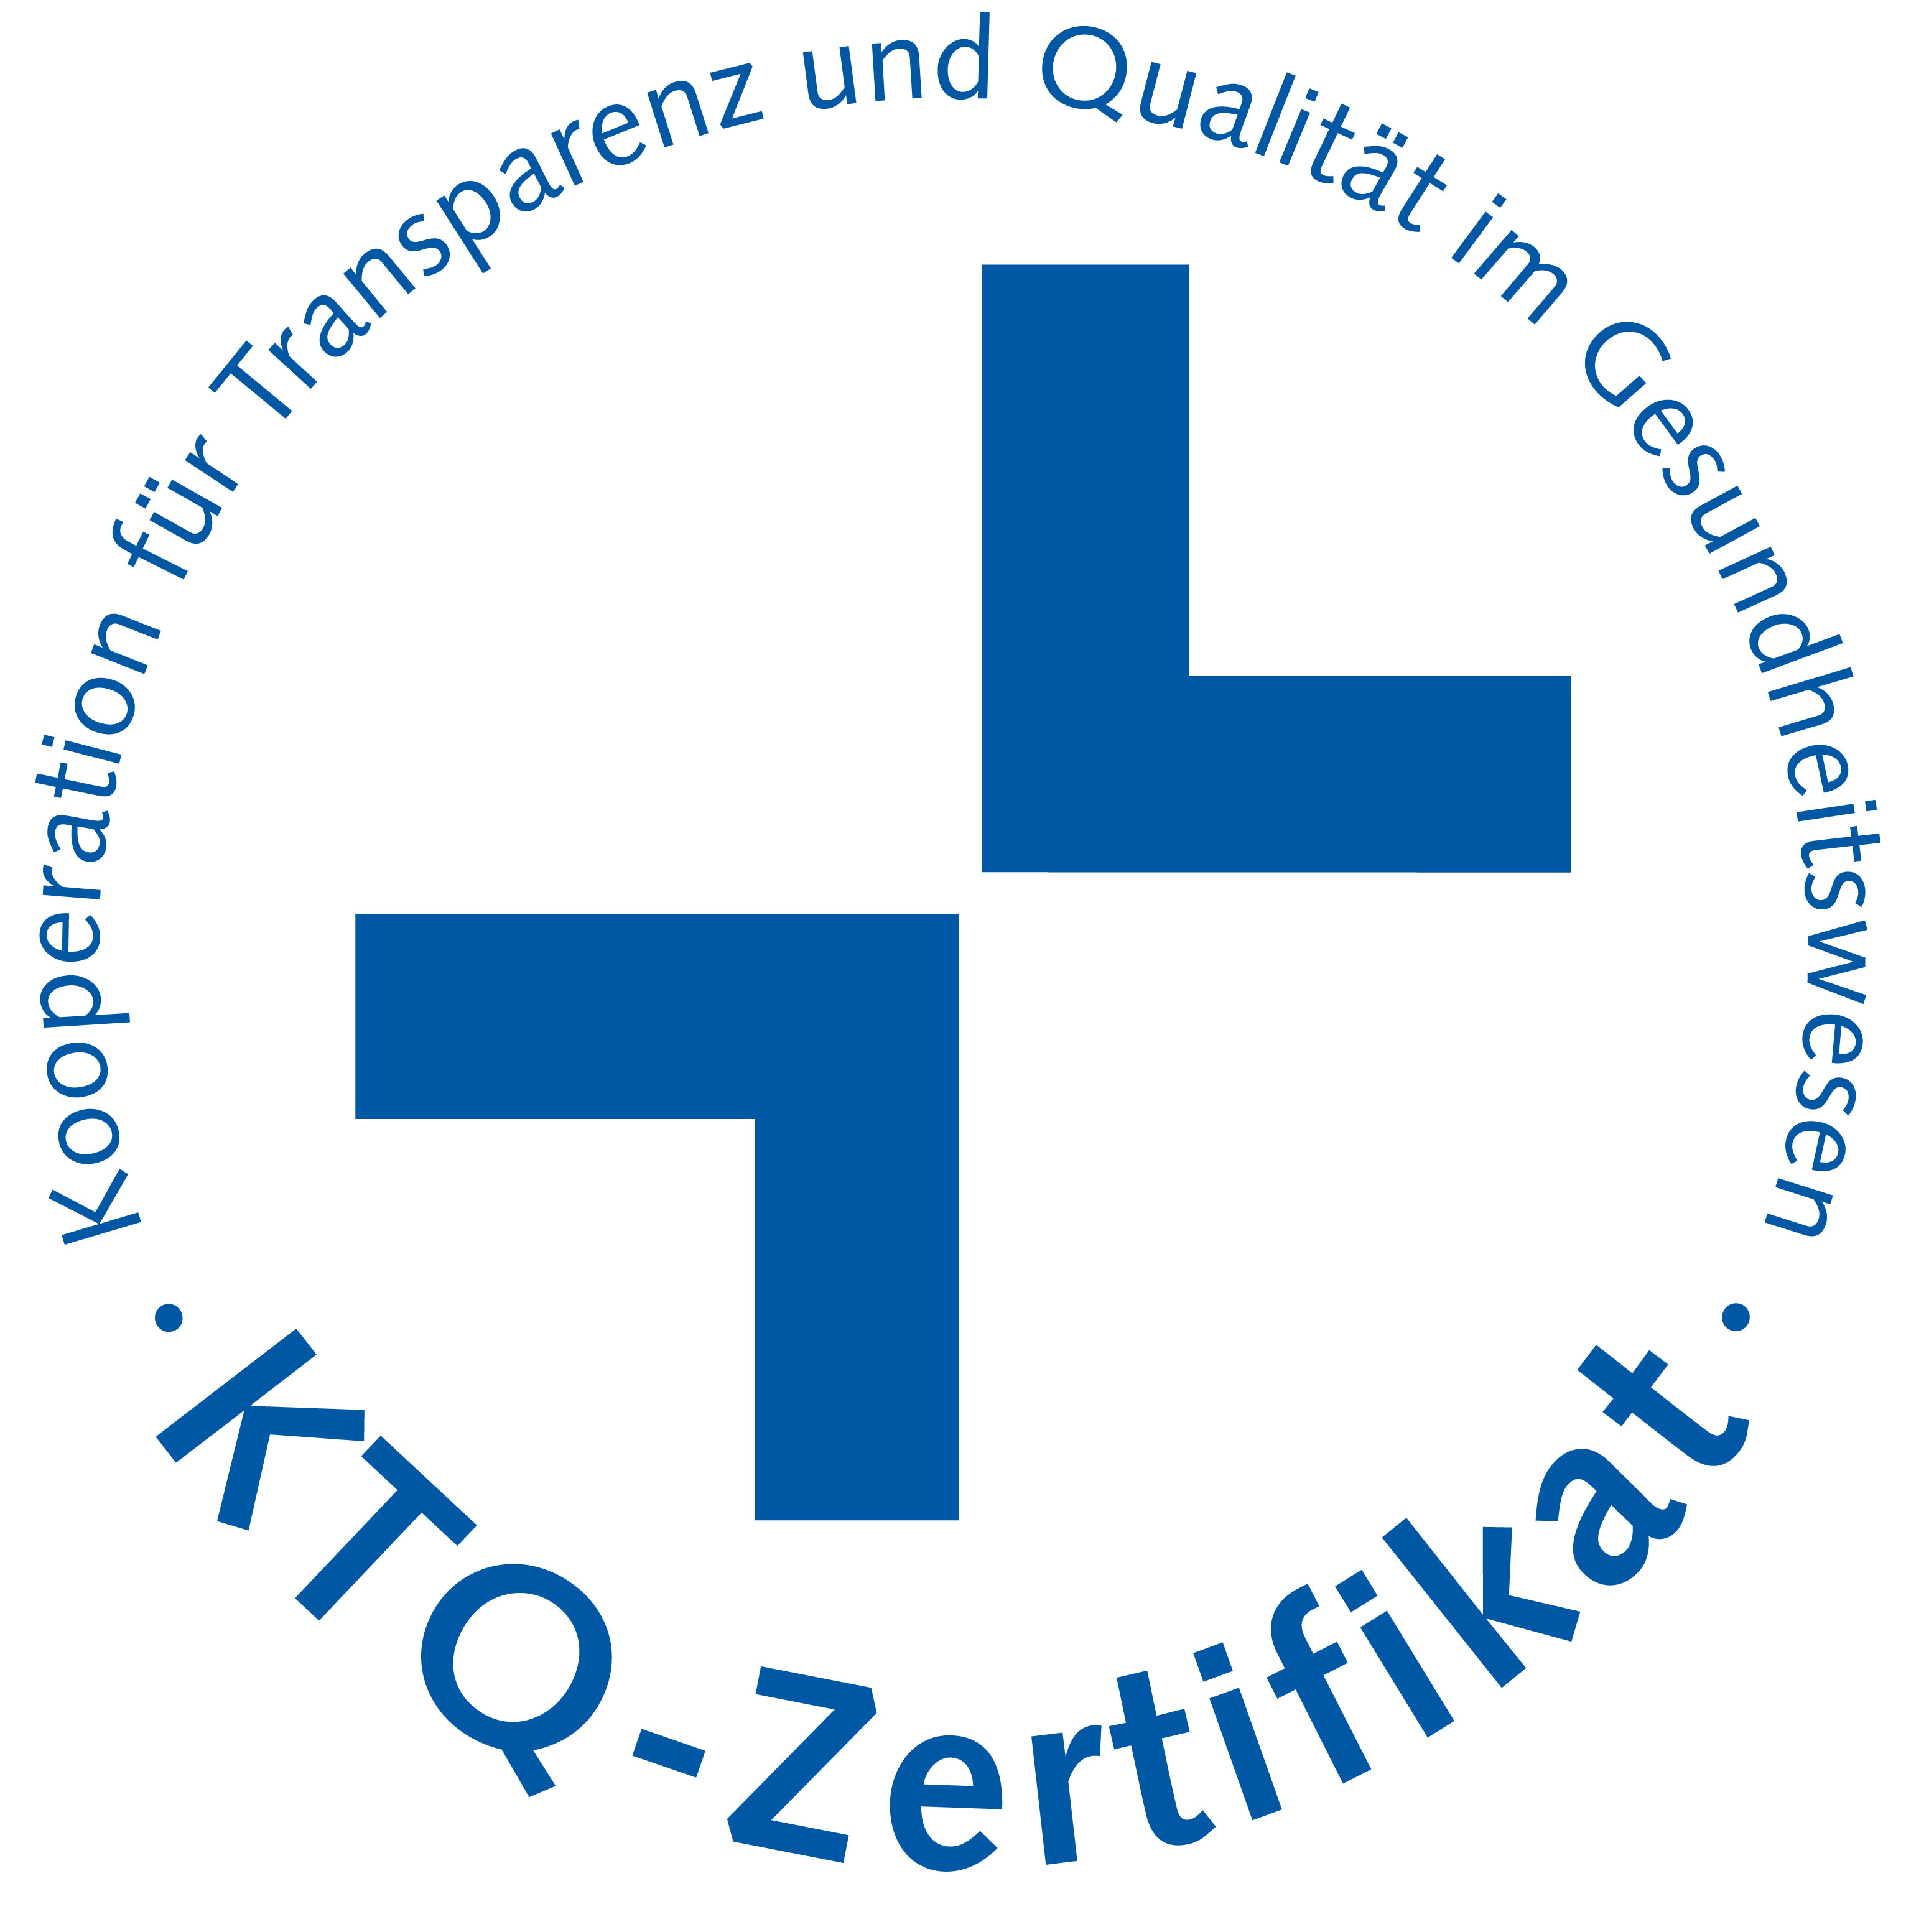 Zertifikat für Kooperation für Transparenz und Qualität im Gesundheitswesen